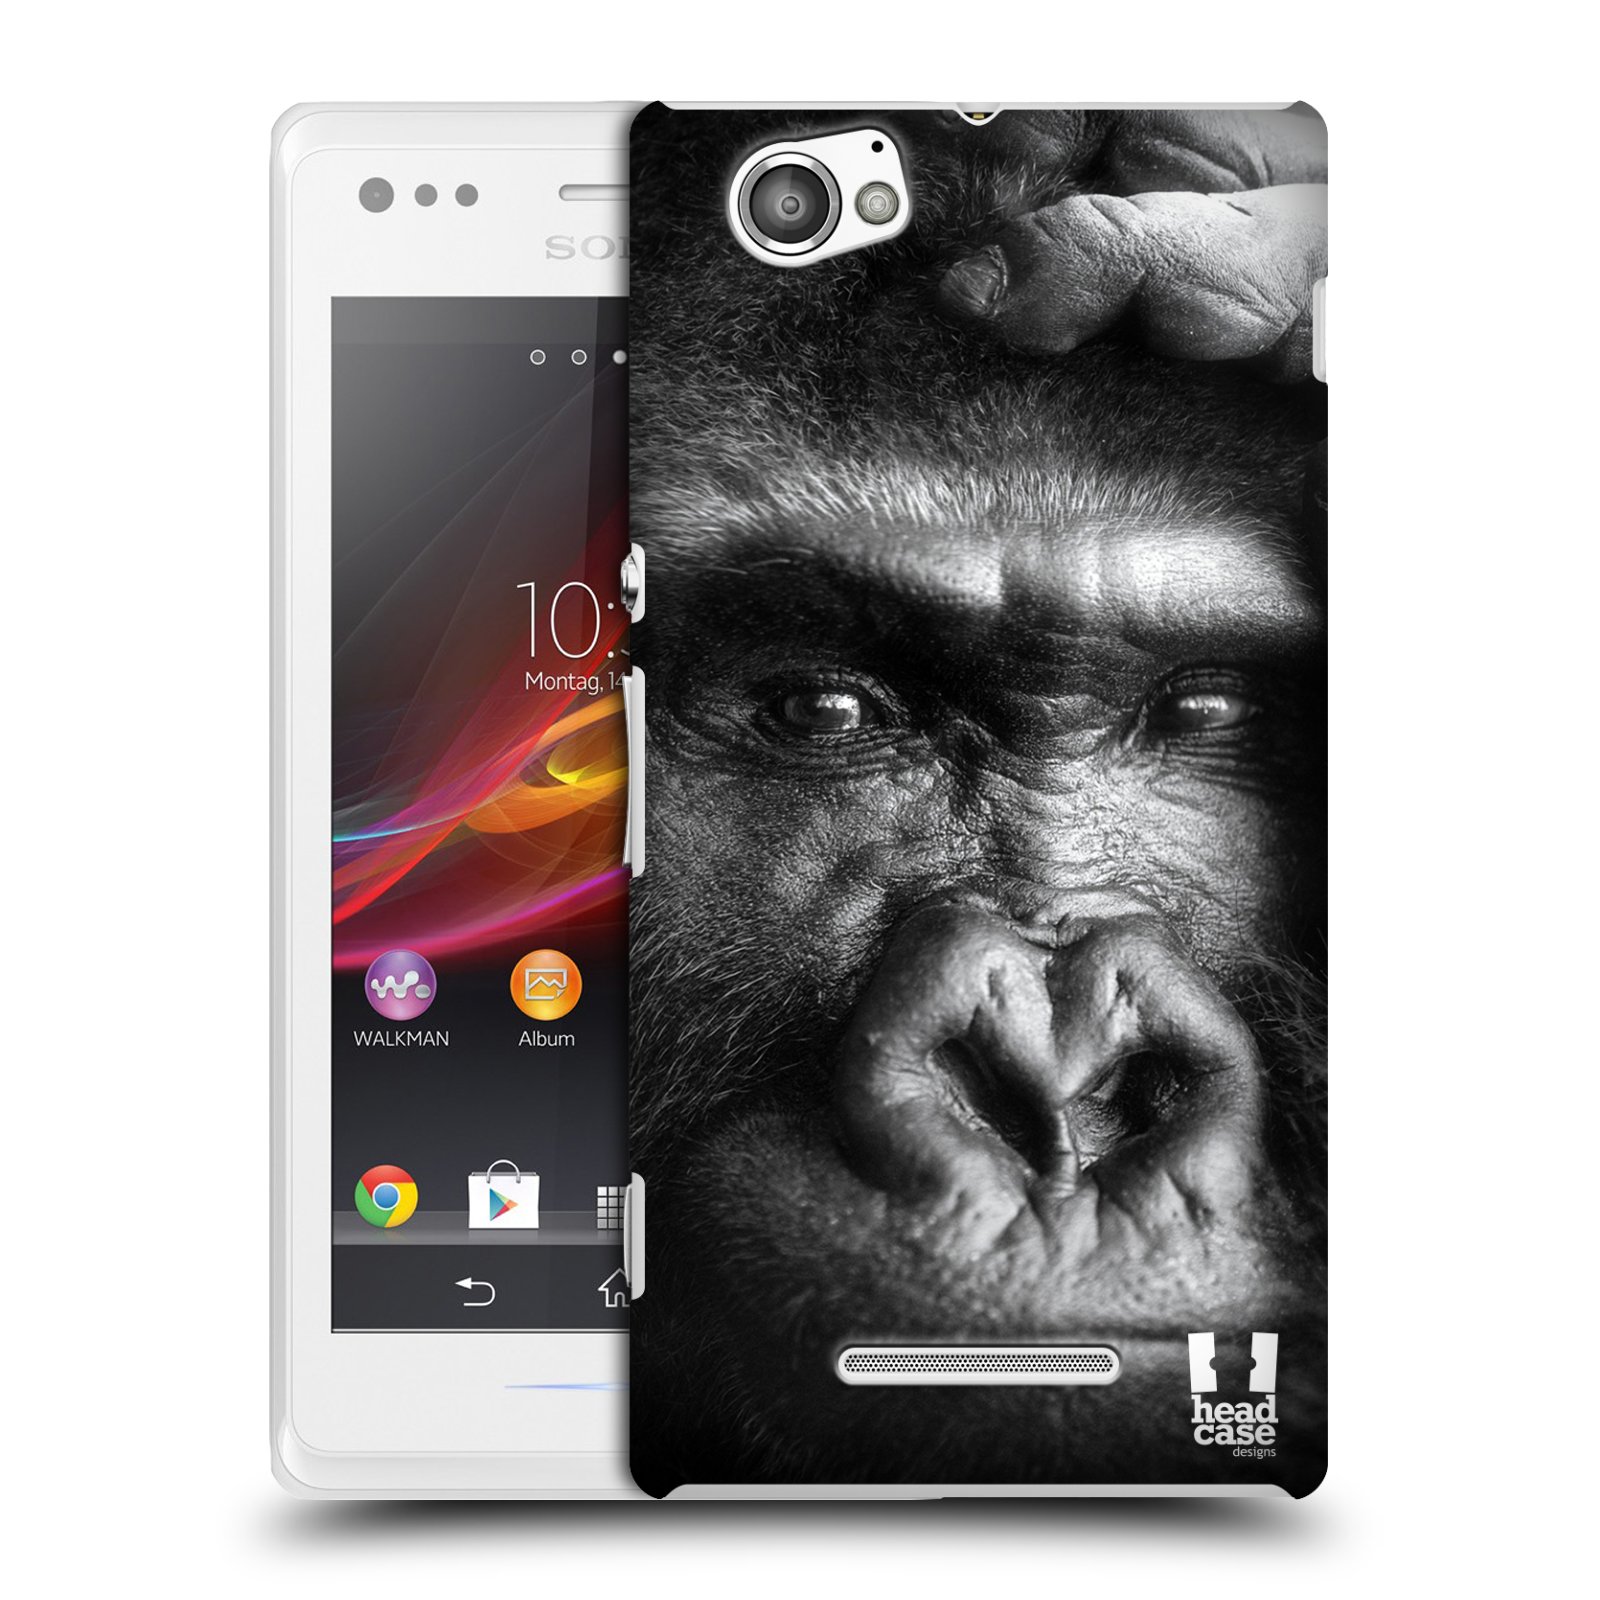 HEAD CASE plastový obal na mobil Sony Xperia M vzor Divočina, Divoký život a zvířata foto GORILA TVÁŘ